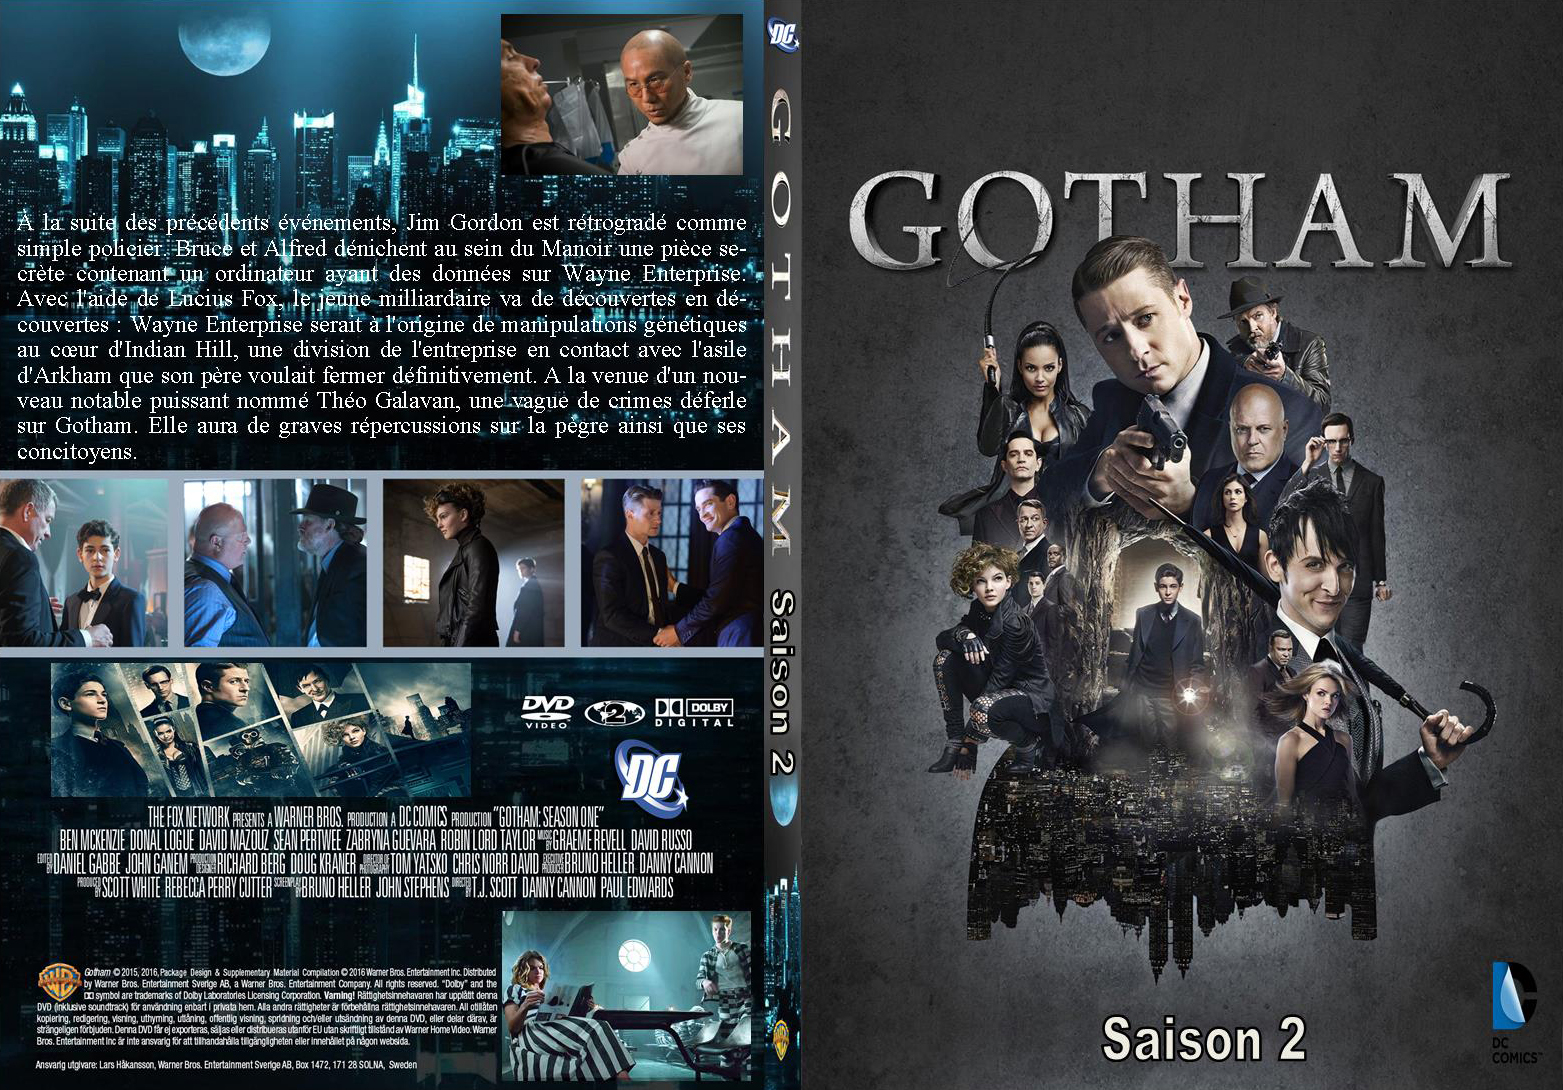 Jaquette DVD Gotham Saison 2 custom v2